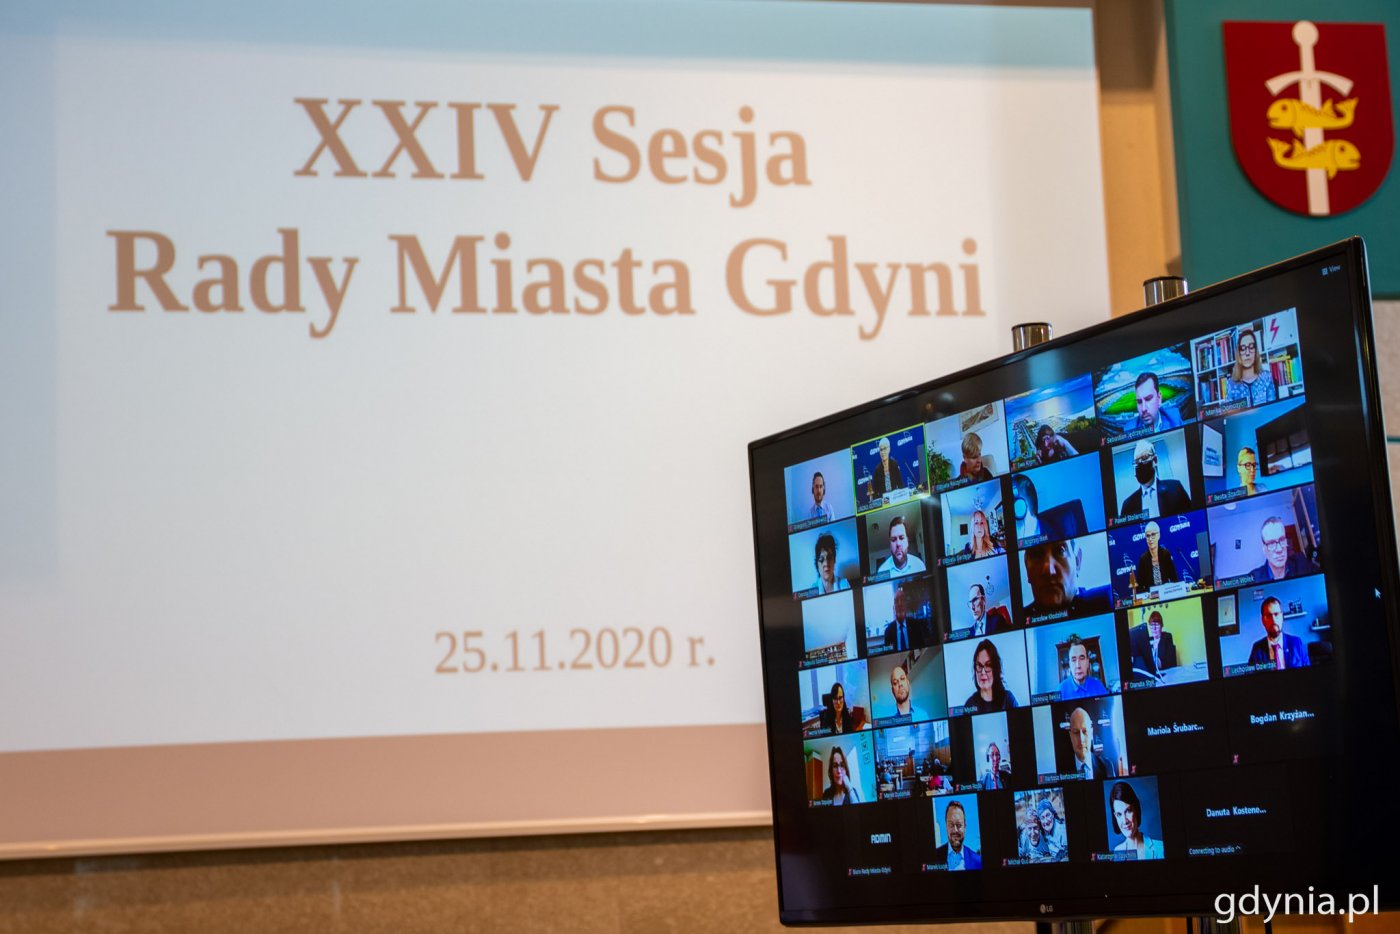 Po prawej stronie ekran LCD, na którym znajdują się kafelki z członkami Rady Miasta Gdyni, którzy połączeni są w ramach videokonferencji Zoom podczas XXIV sesji Rady Miasta Gdyni. W tle duży ekran z napisem XXIV sesja Rady Miasta Gdyni.